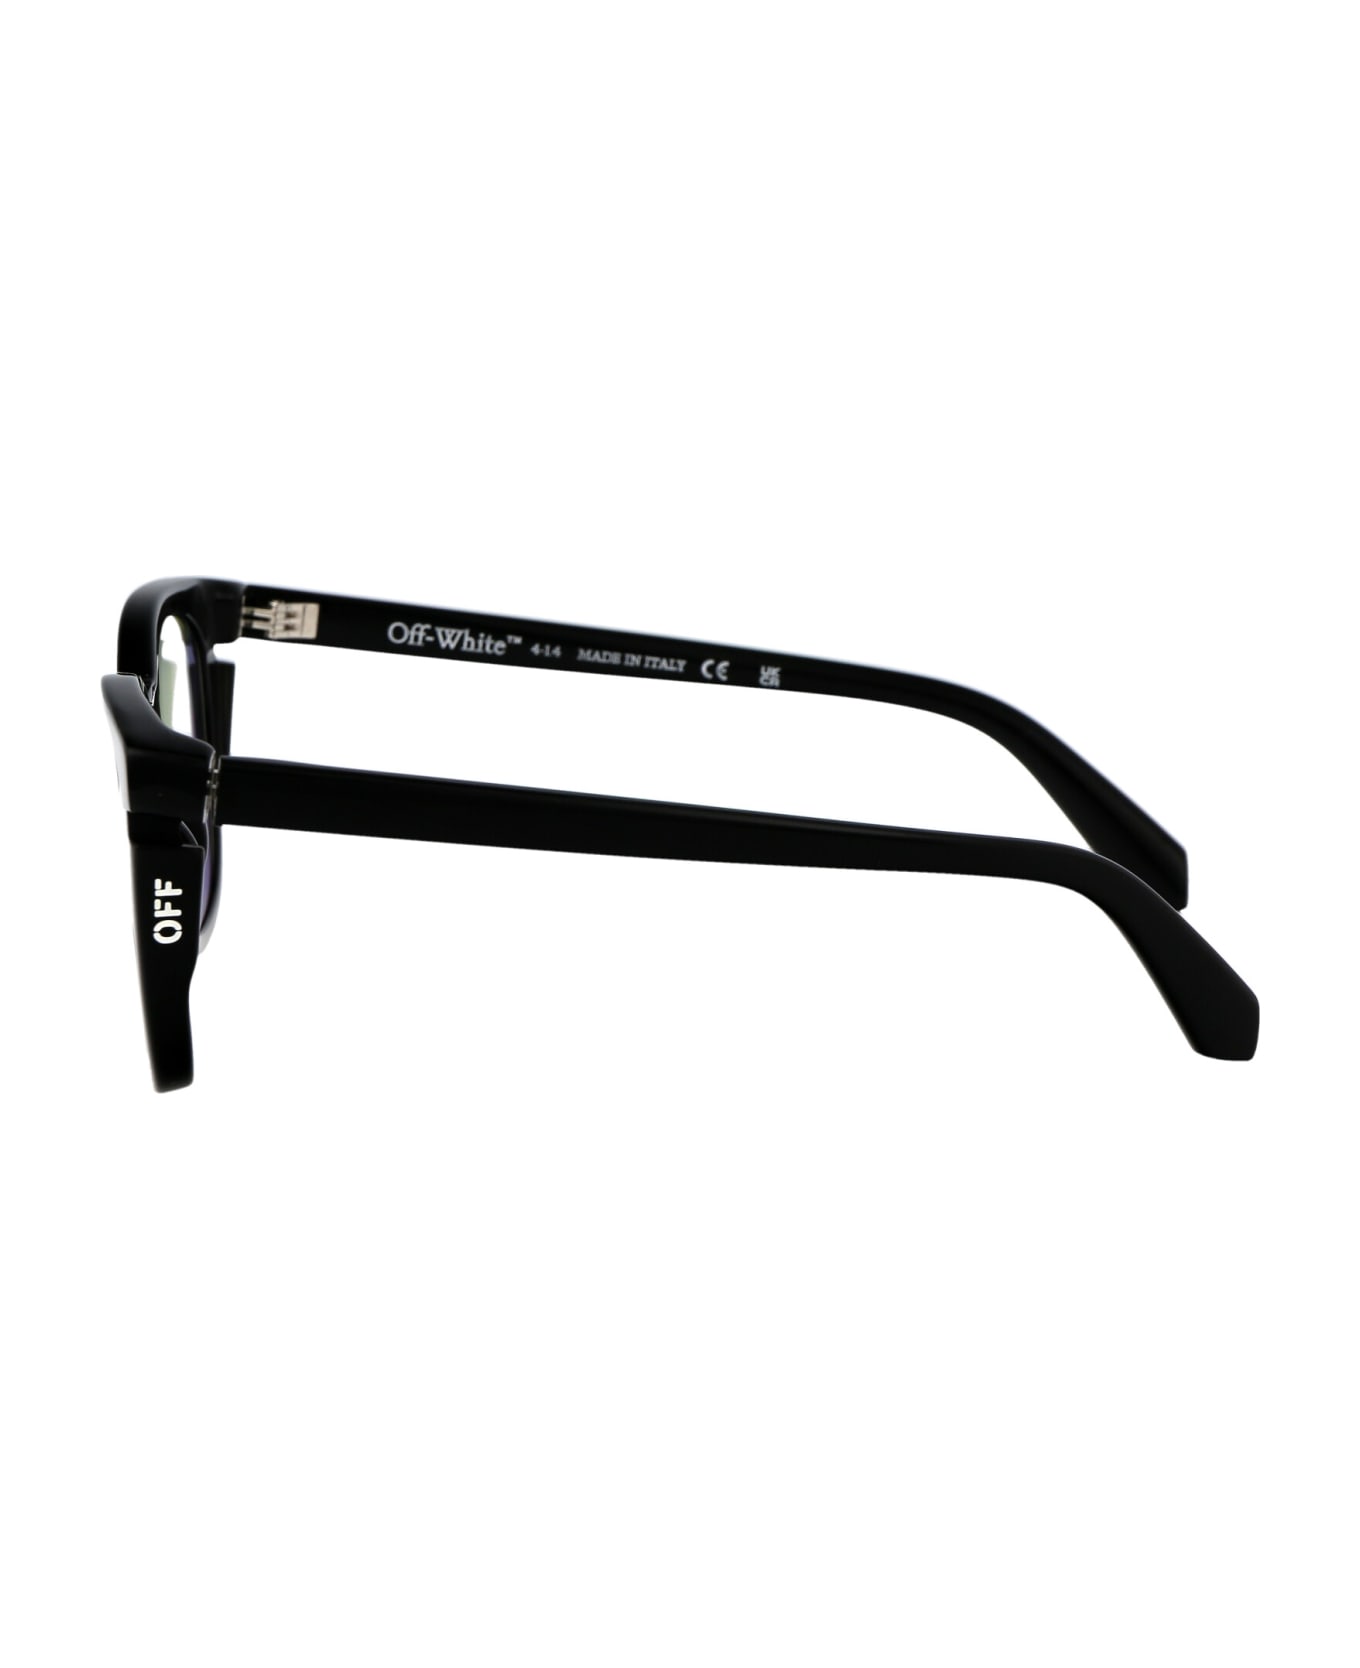 Off-White Optical Style 51 Glasses - 1000 BLACK アイウェア